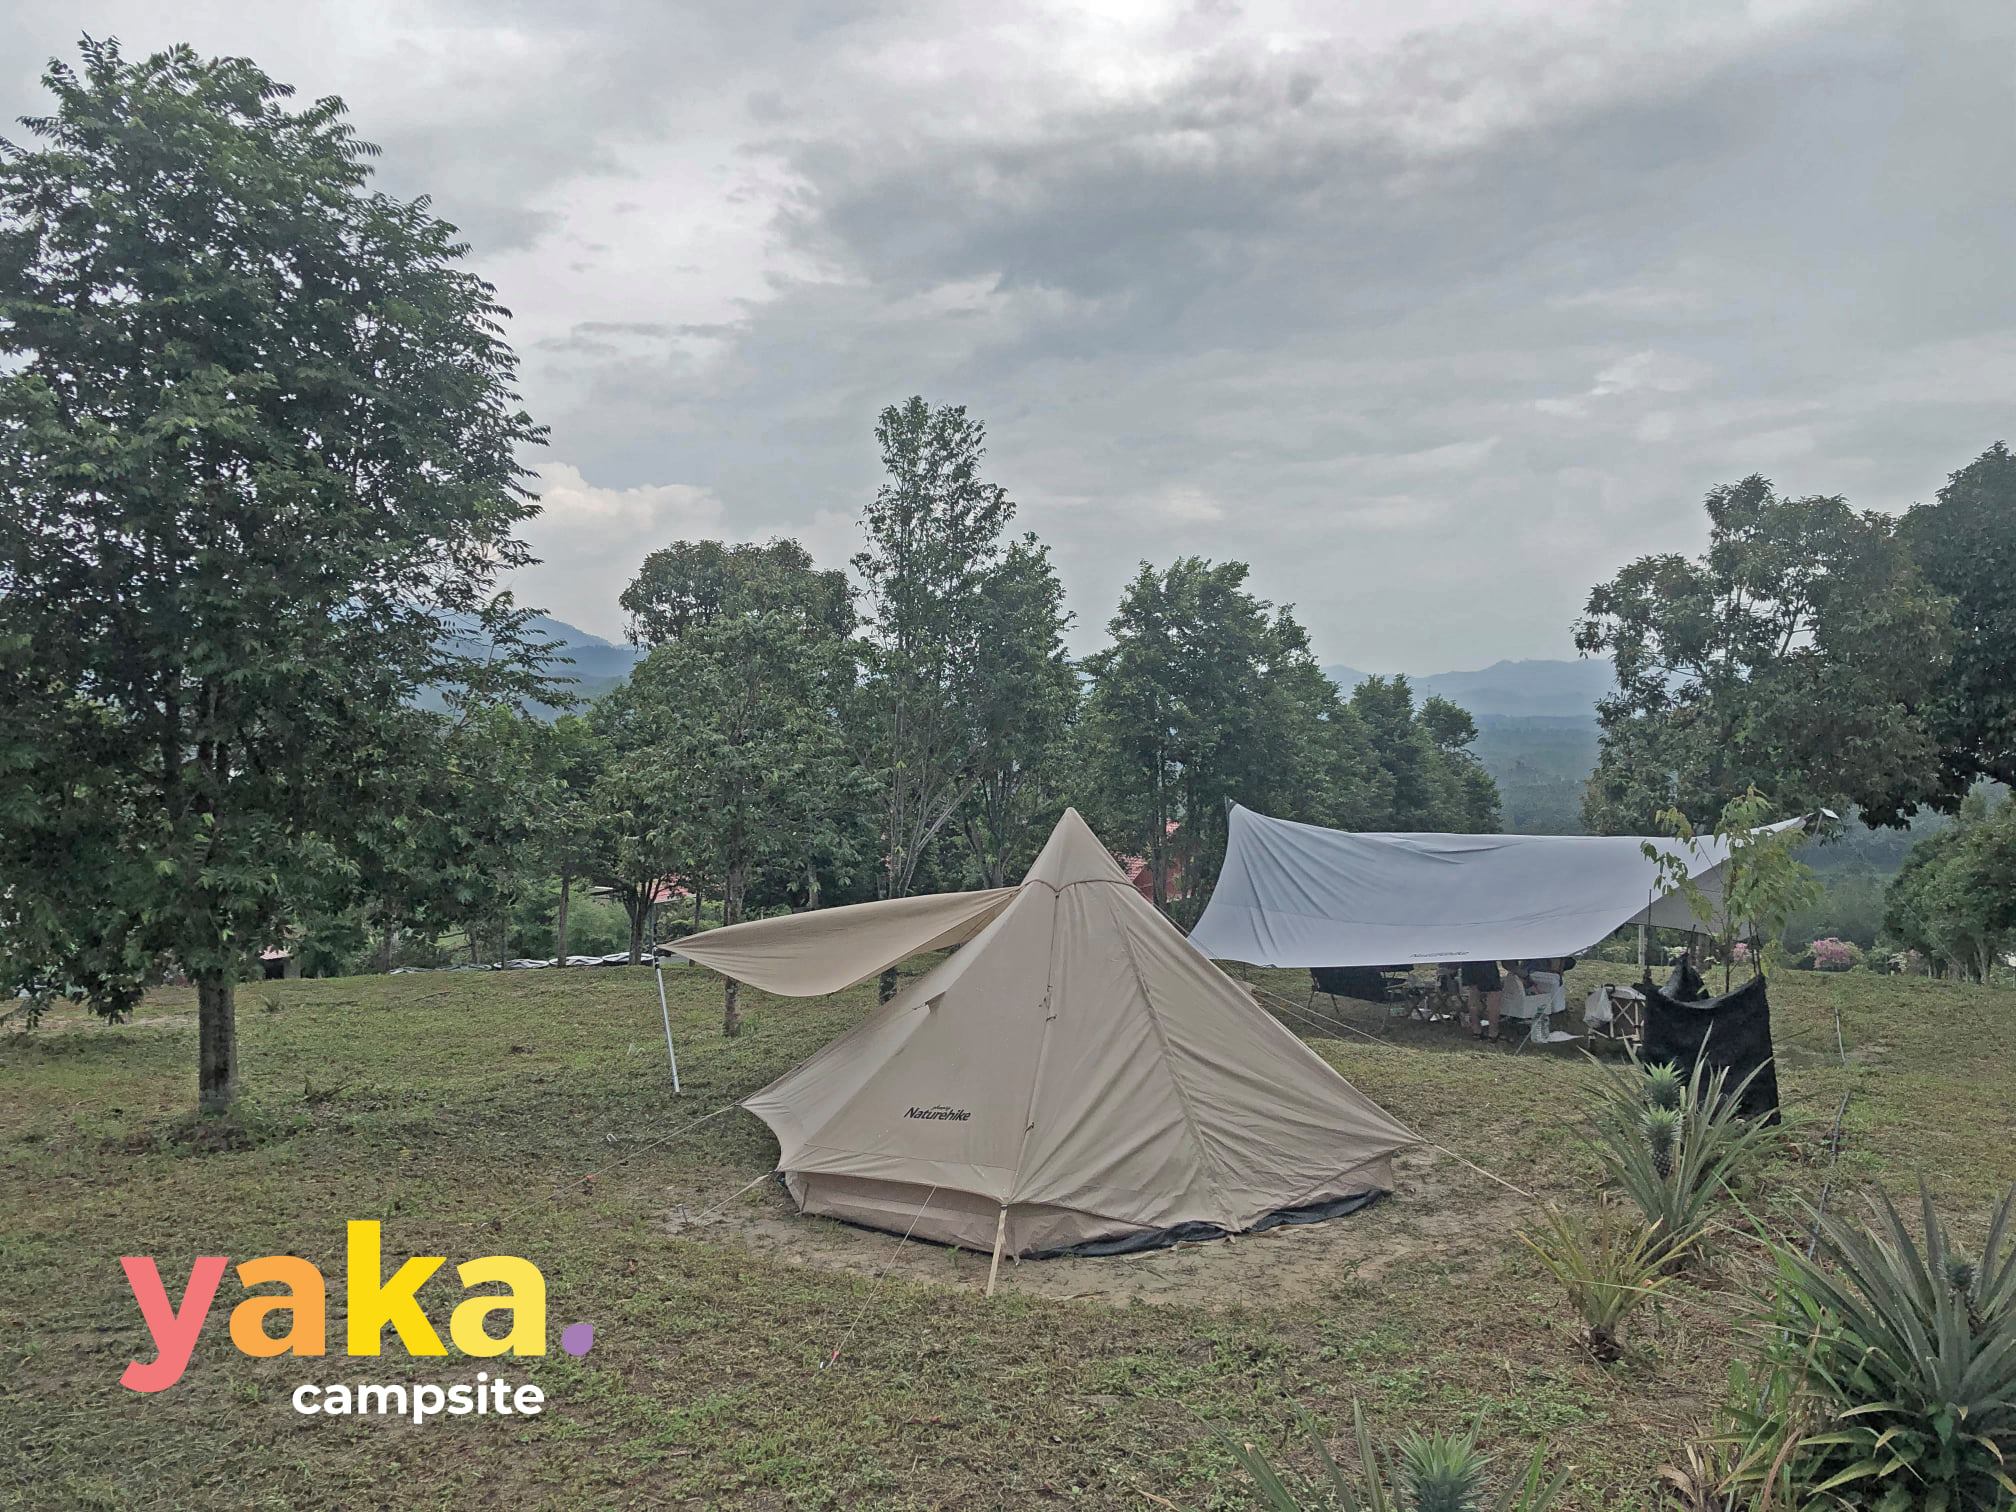 Yaka campsite